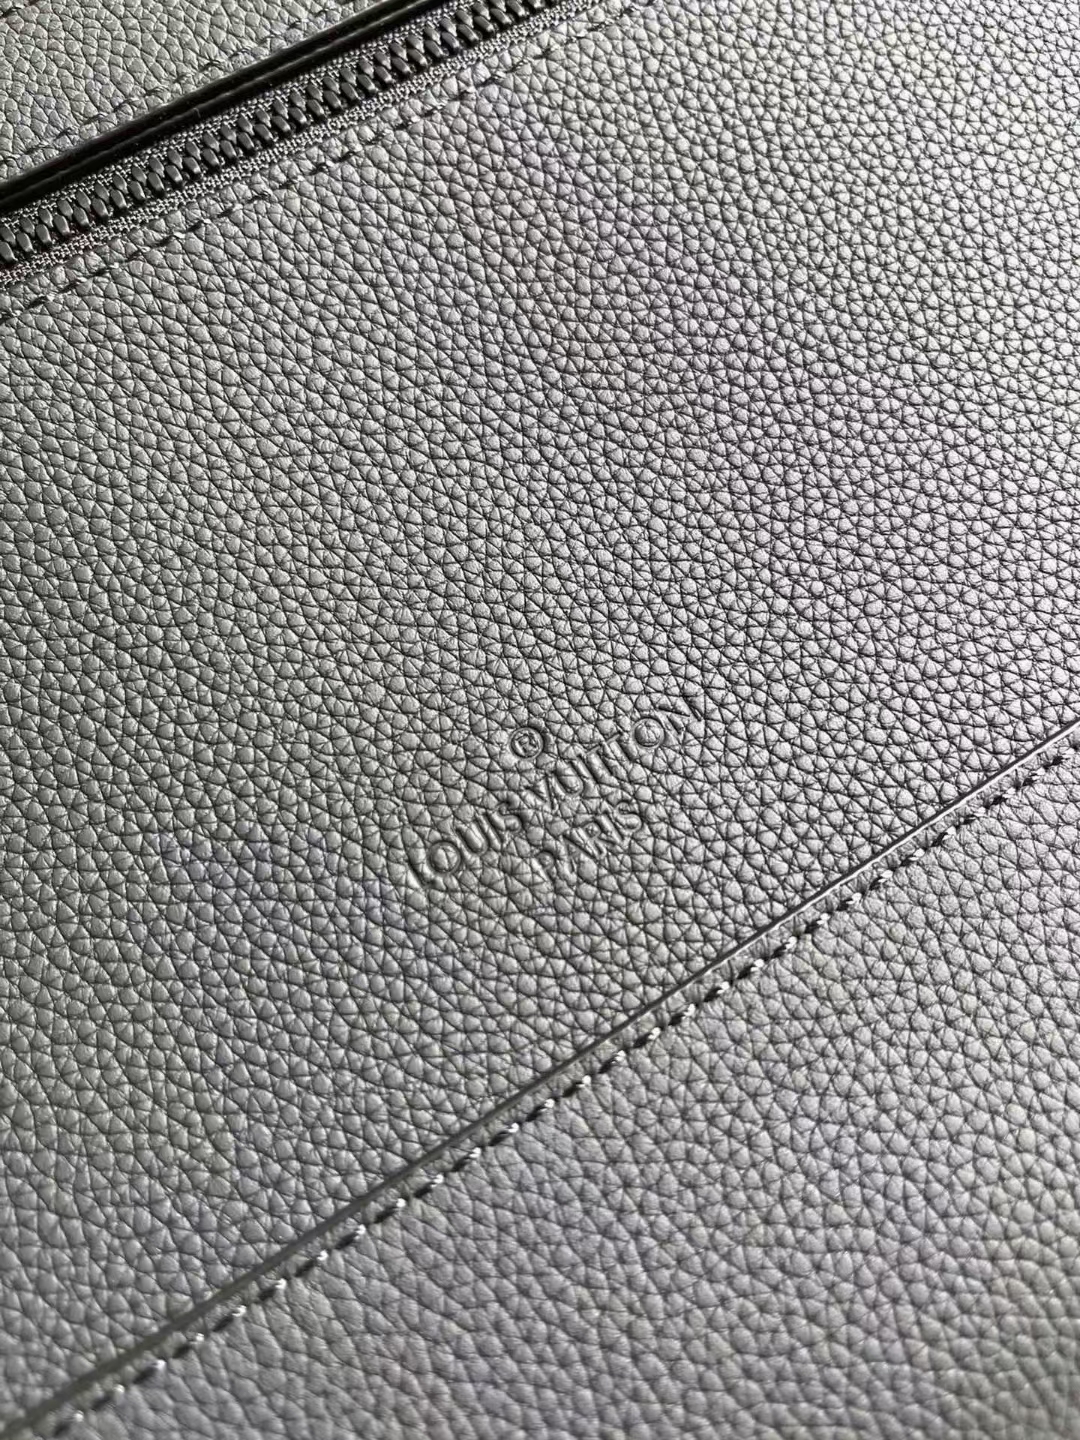 Túi LV Nữ (Louis Vuitton) Hàng Hiệu Siêu Cấp Like Auth 99%